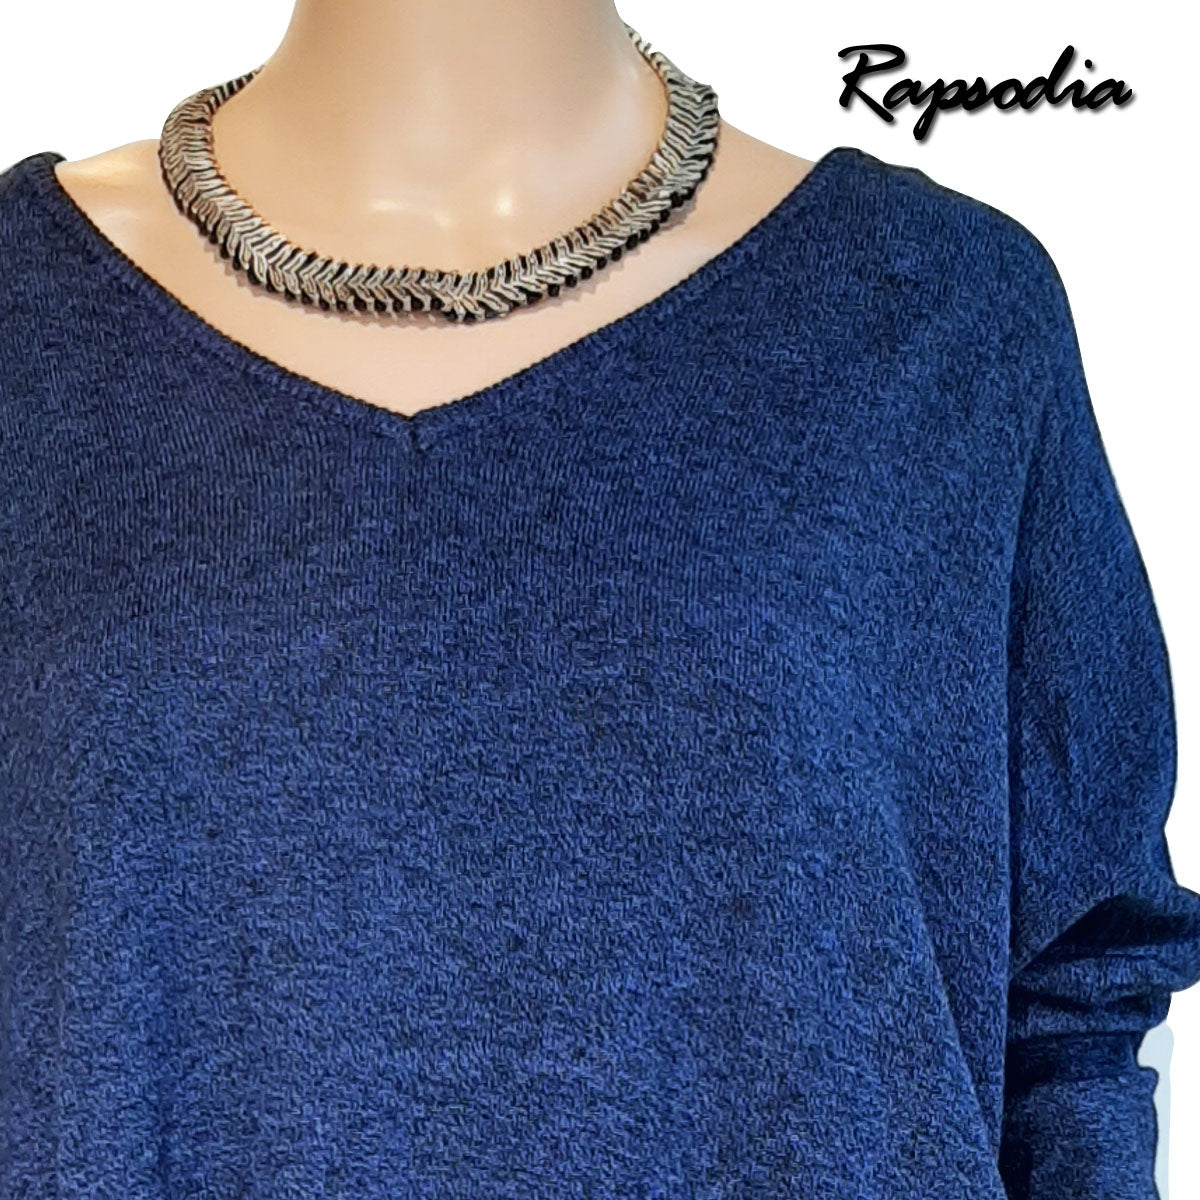 Sweater Rapsodia Moline Azul